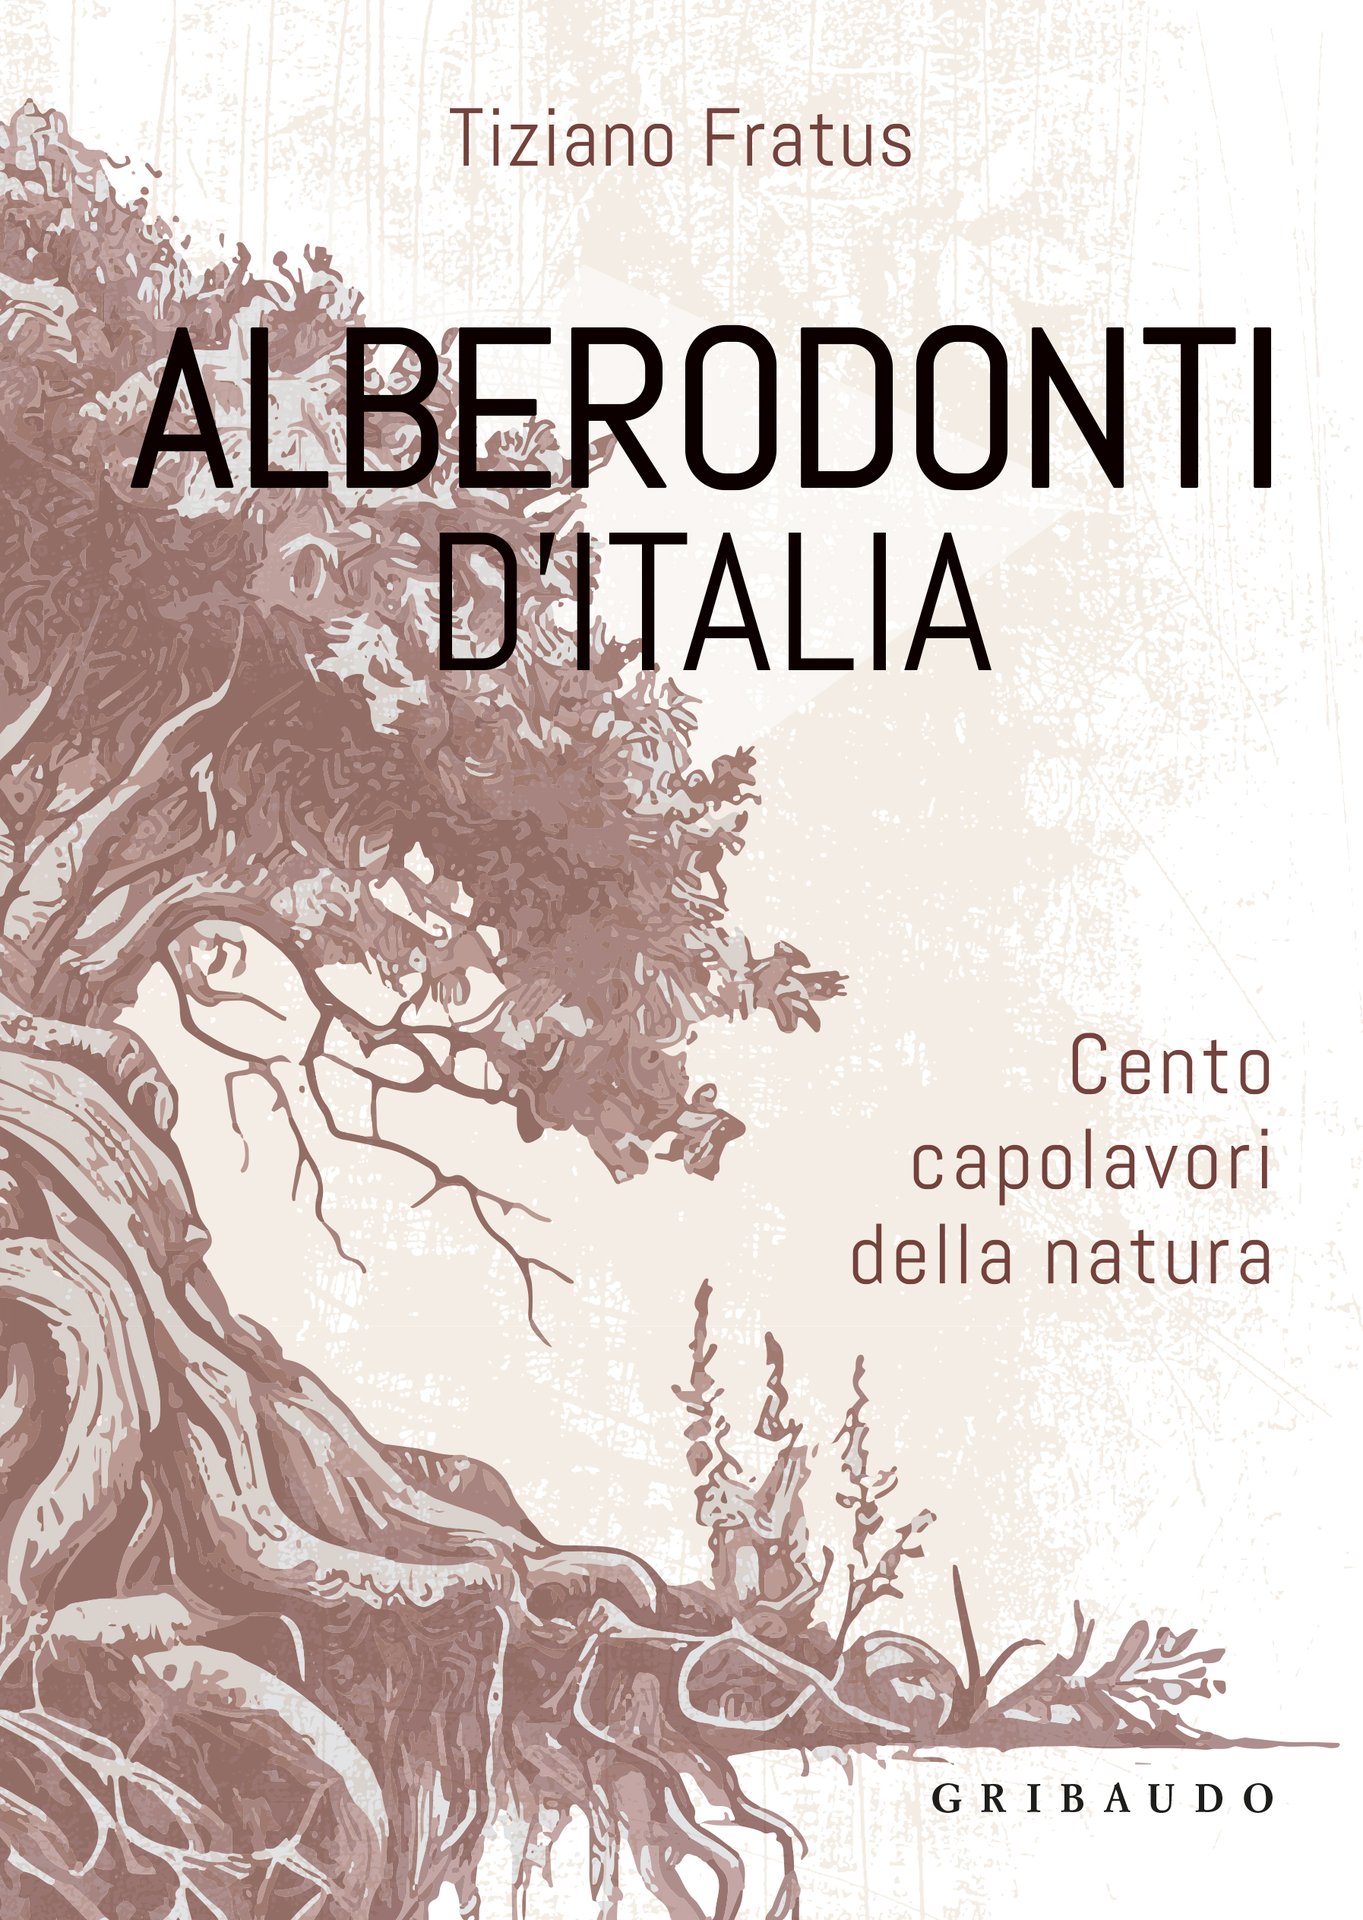 Tiziano Fratus presenta Alberodonti d’Italia a Cremona